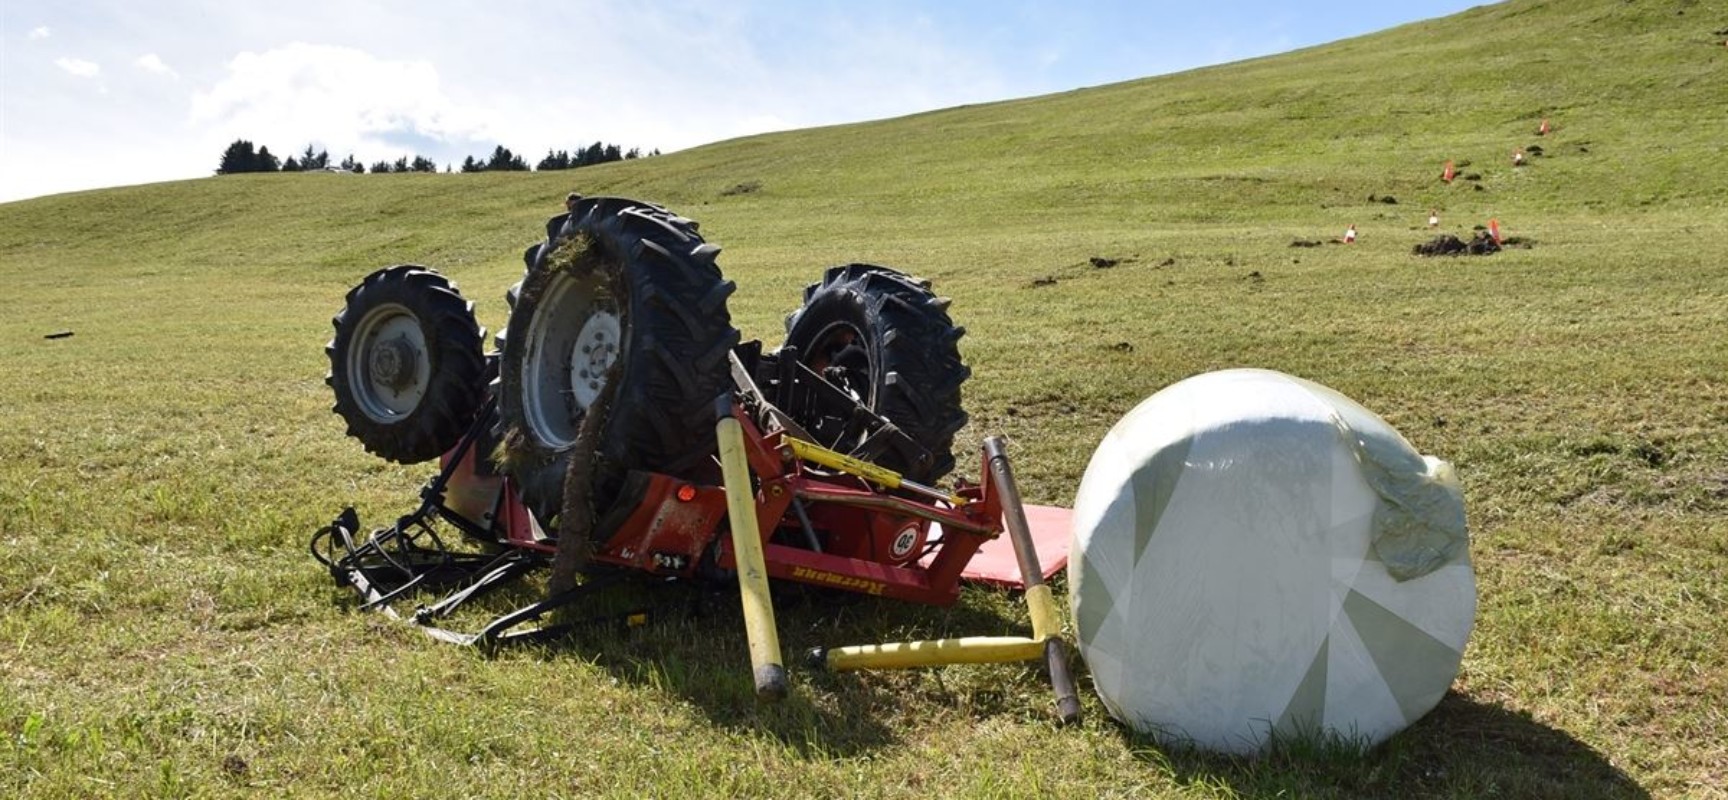 Traktorunfall in Urmein: Beim Siloballen-laden kam Traktor ins Rutschen